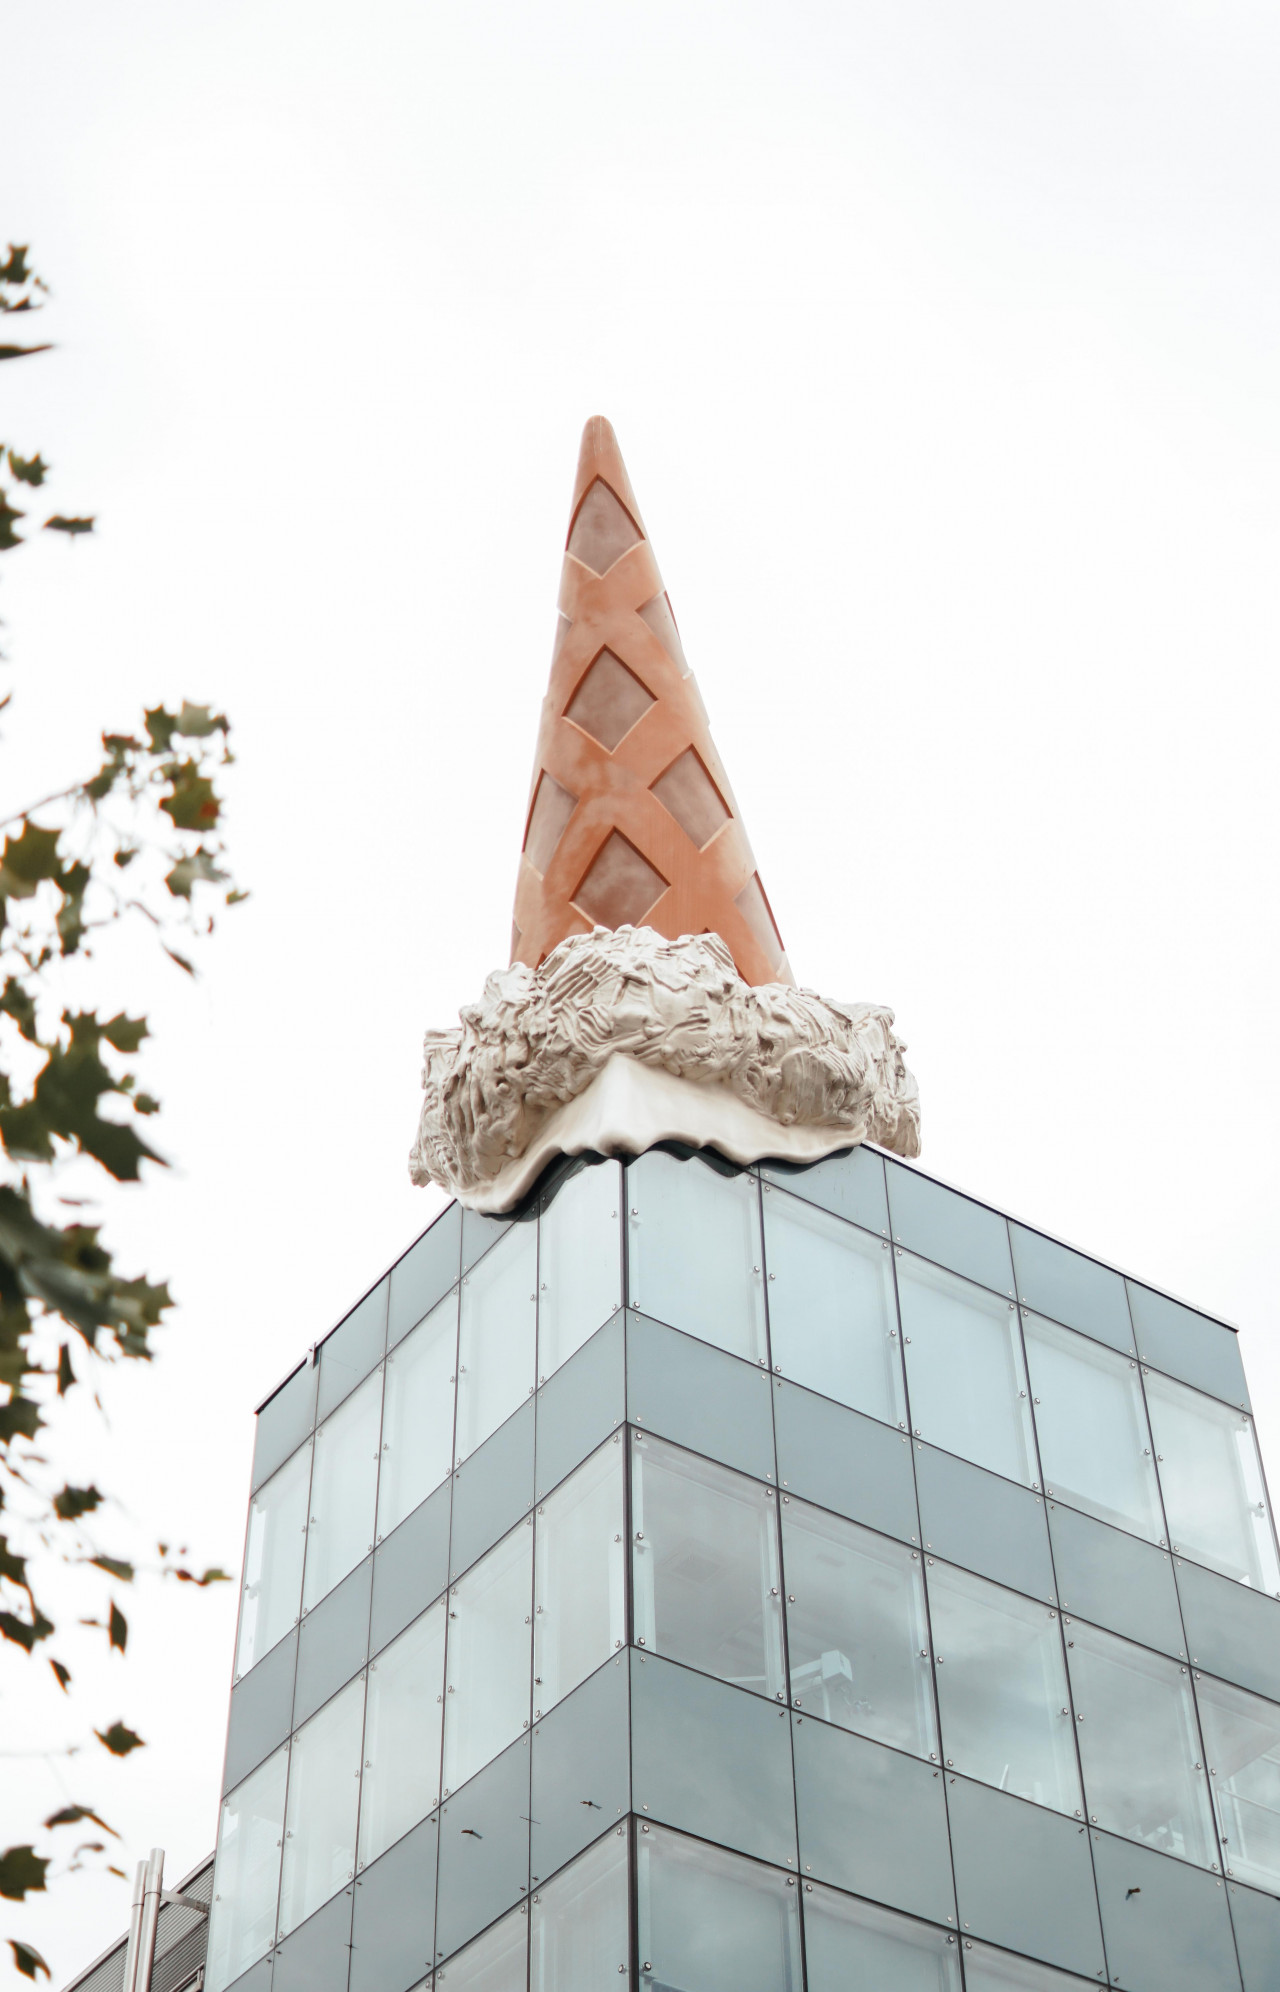 neumarkt galerie koln mit skulptur dropped cone claes oldenburg und coosje van bruggen 8364